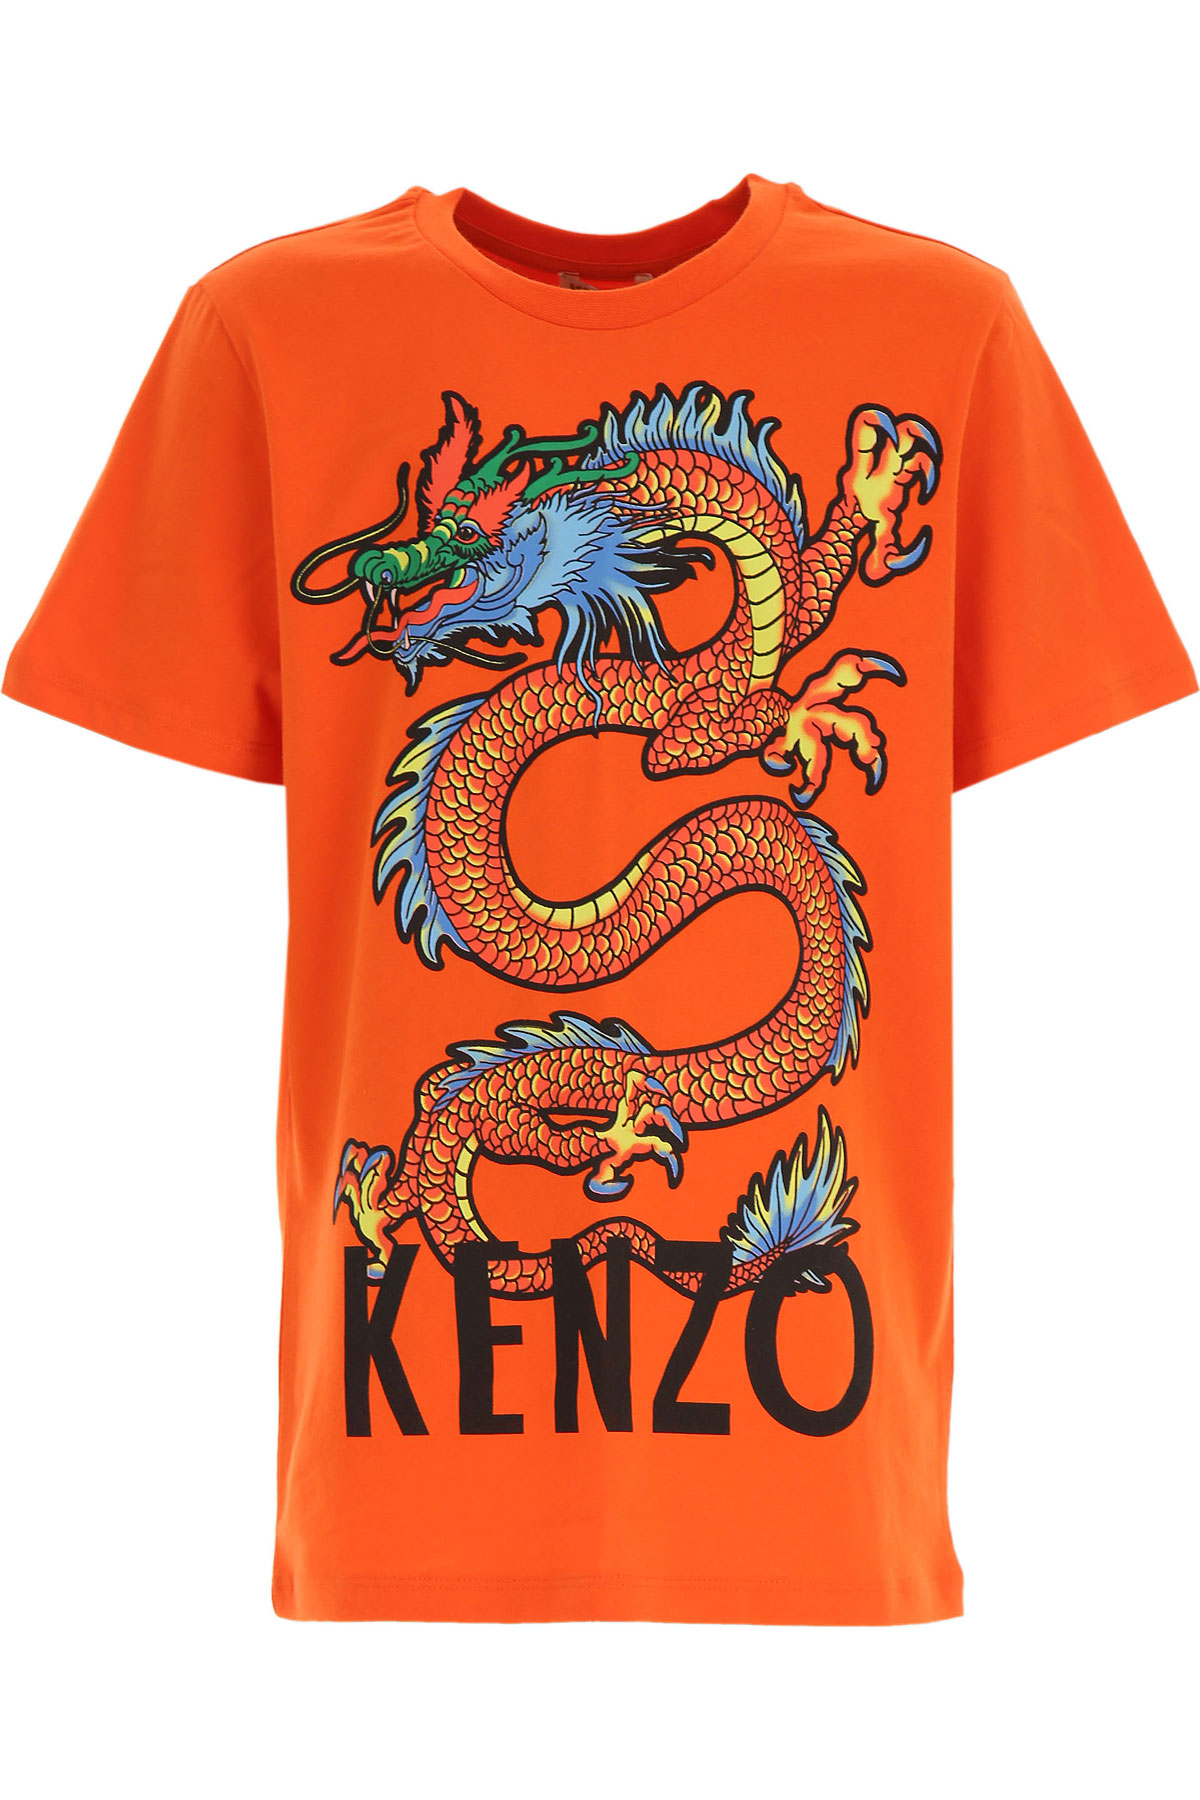 Kenzo Kinder T-Shirt für Jungen Günstig im Sale, Orange, Baumwolle, 2017, 10Y 14Y 8Y